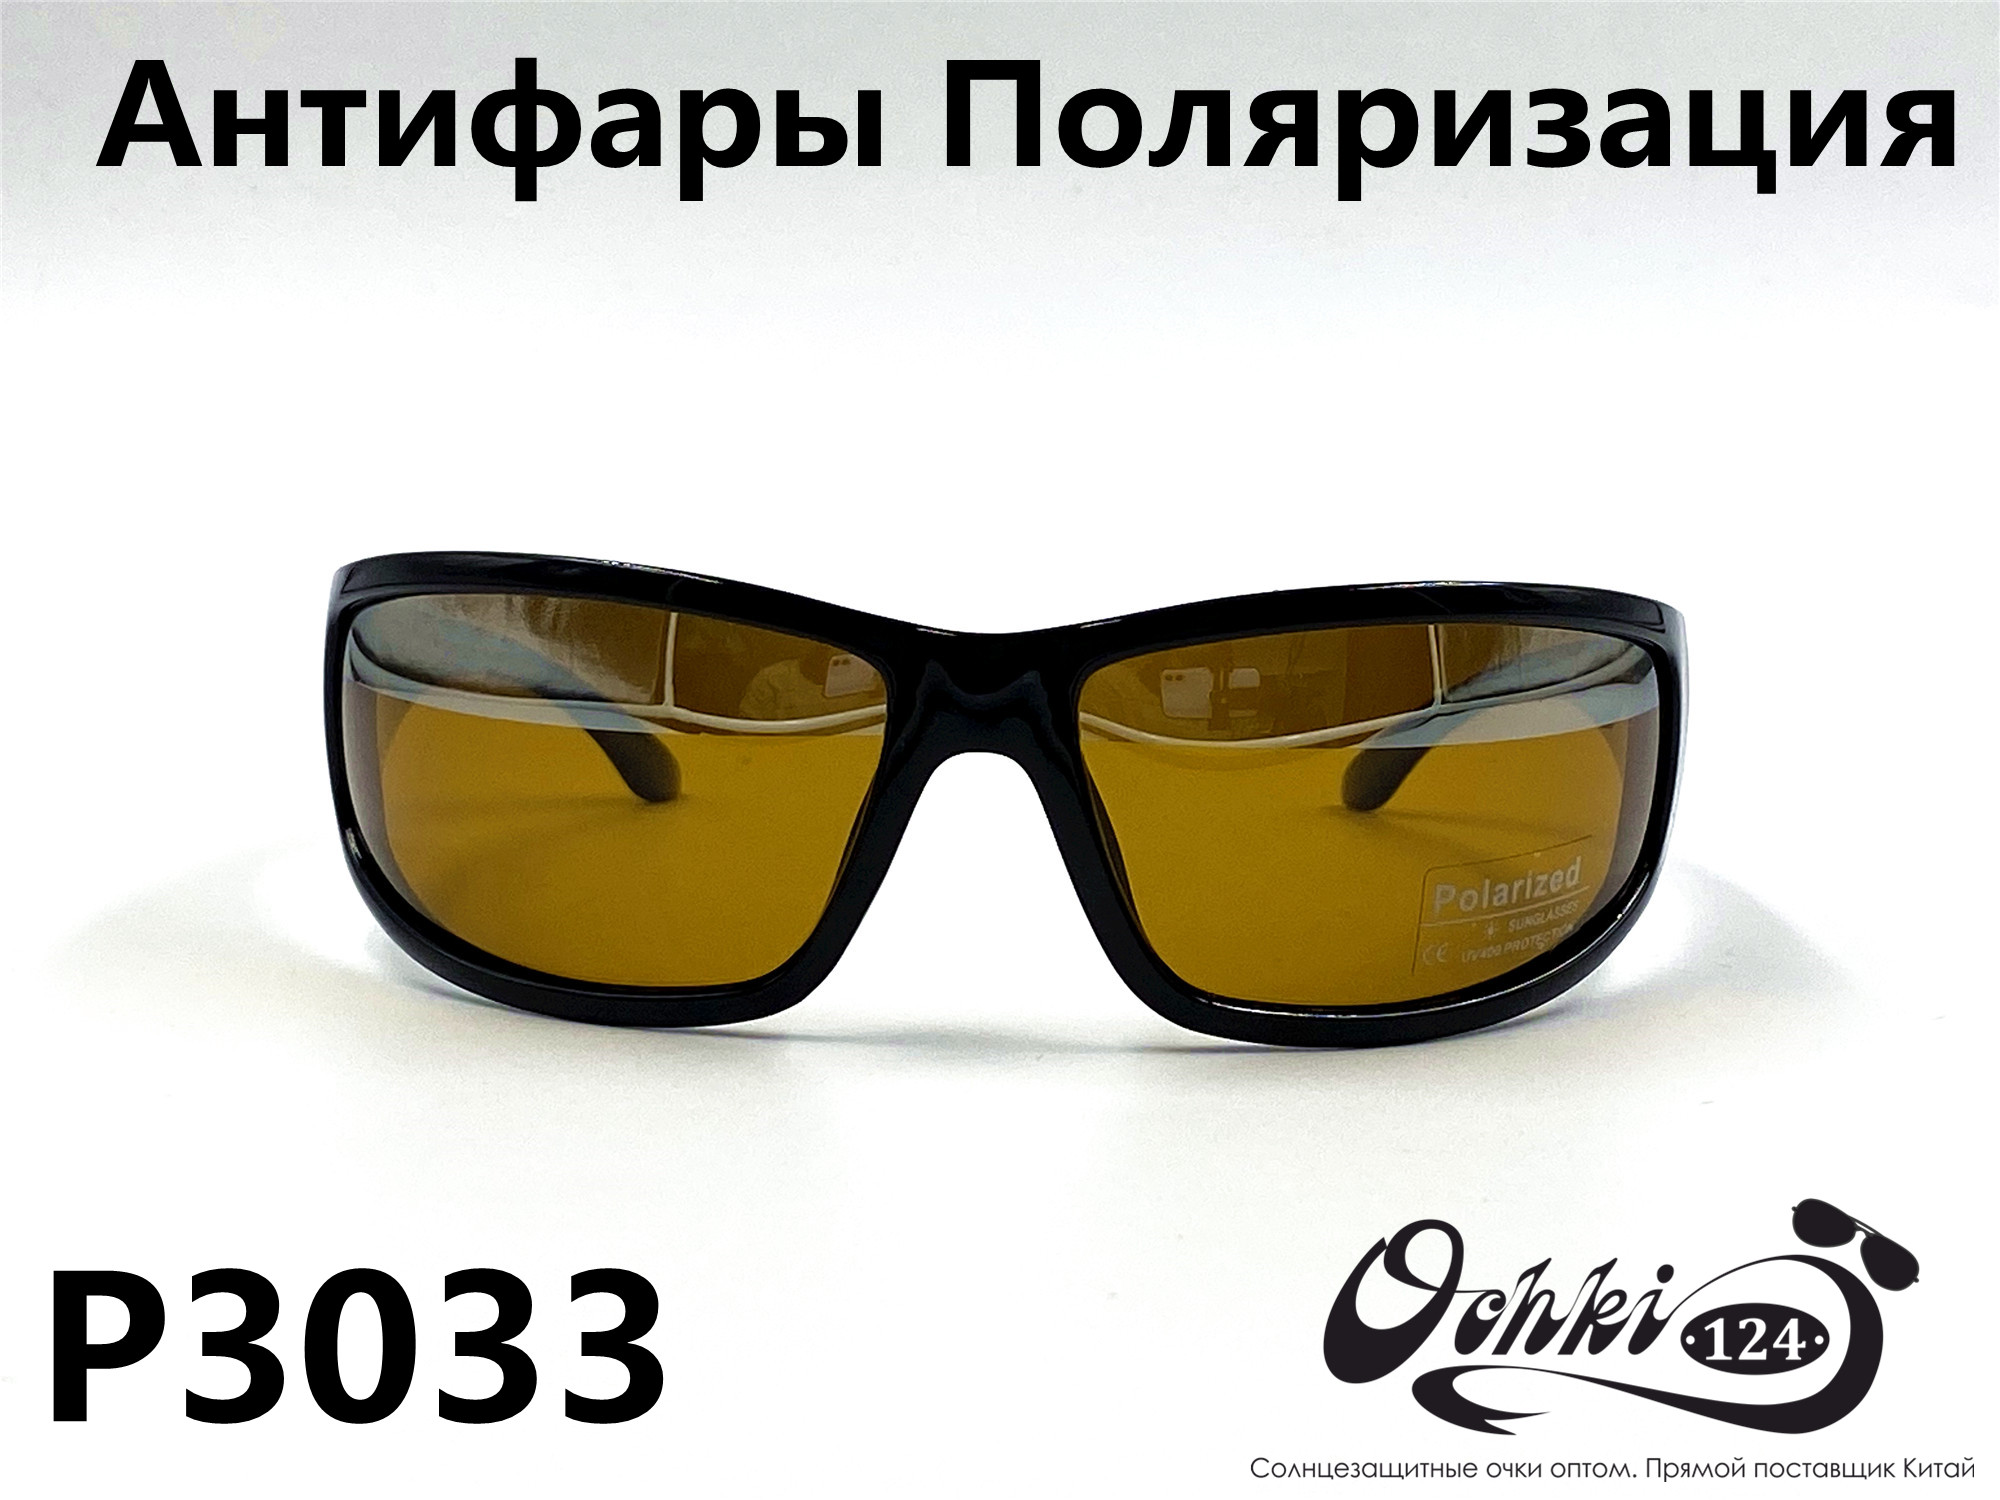  Солнцезащитные очки картинка 2022 Мужские антифары-спорт, с зеркальной полосой, Желтый Polarized P3033-1 